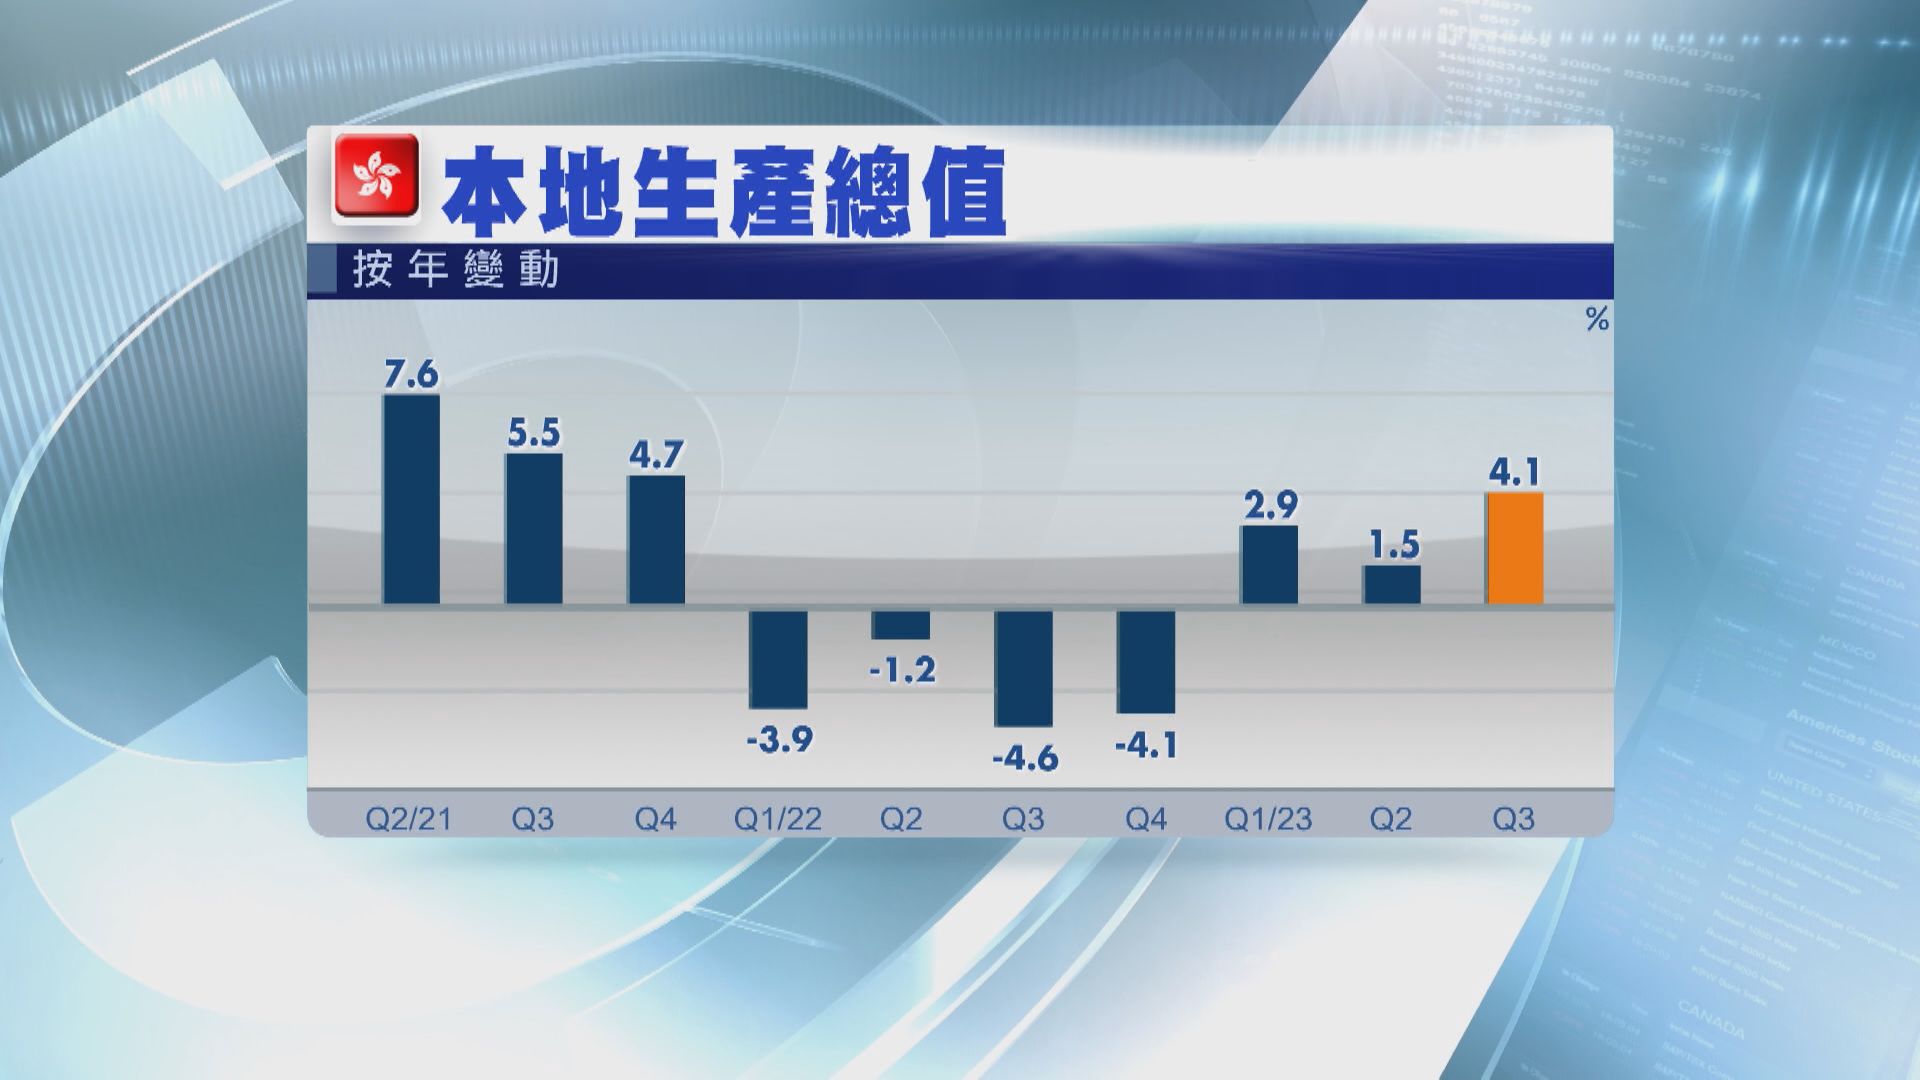 【增速加快】本港第3季GDP增長4.1% 遠遜預期